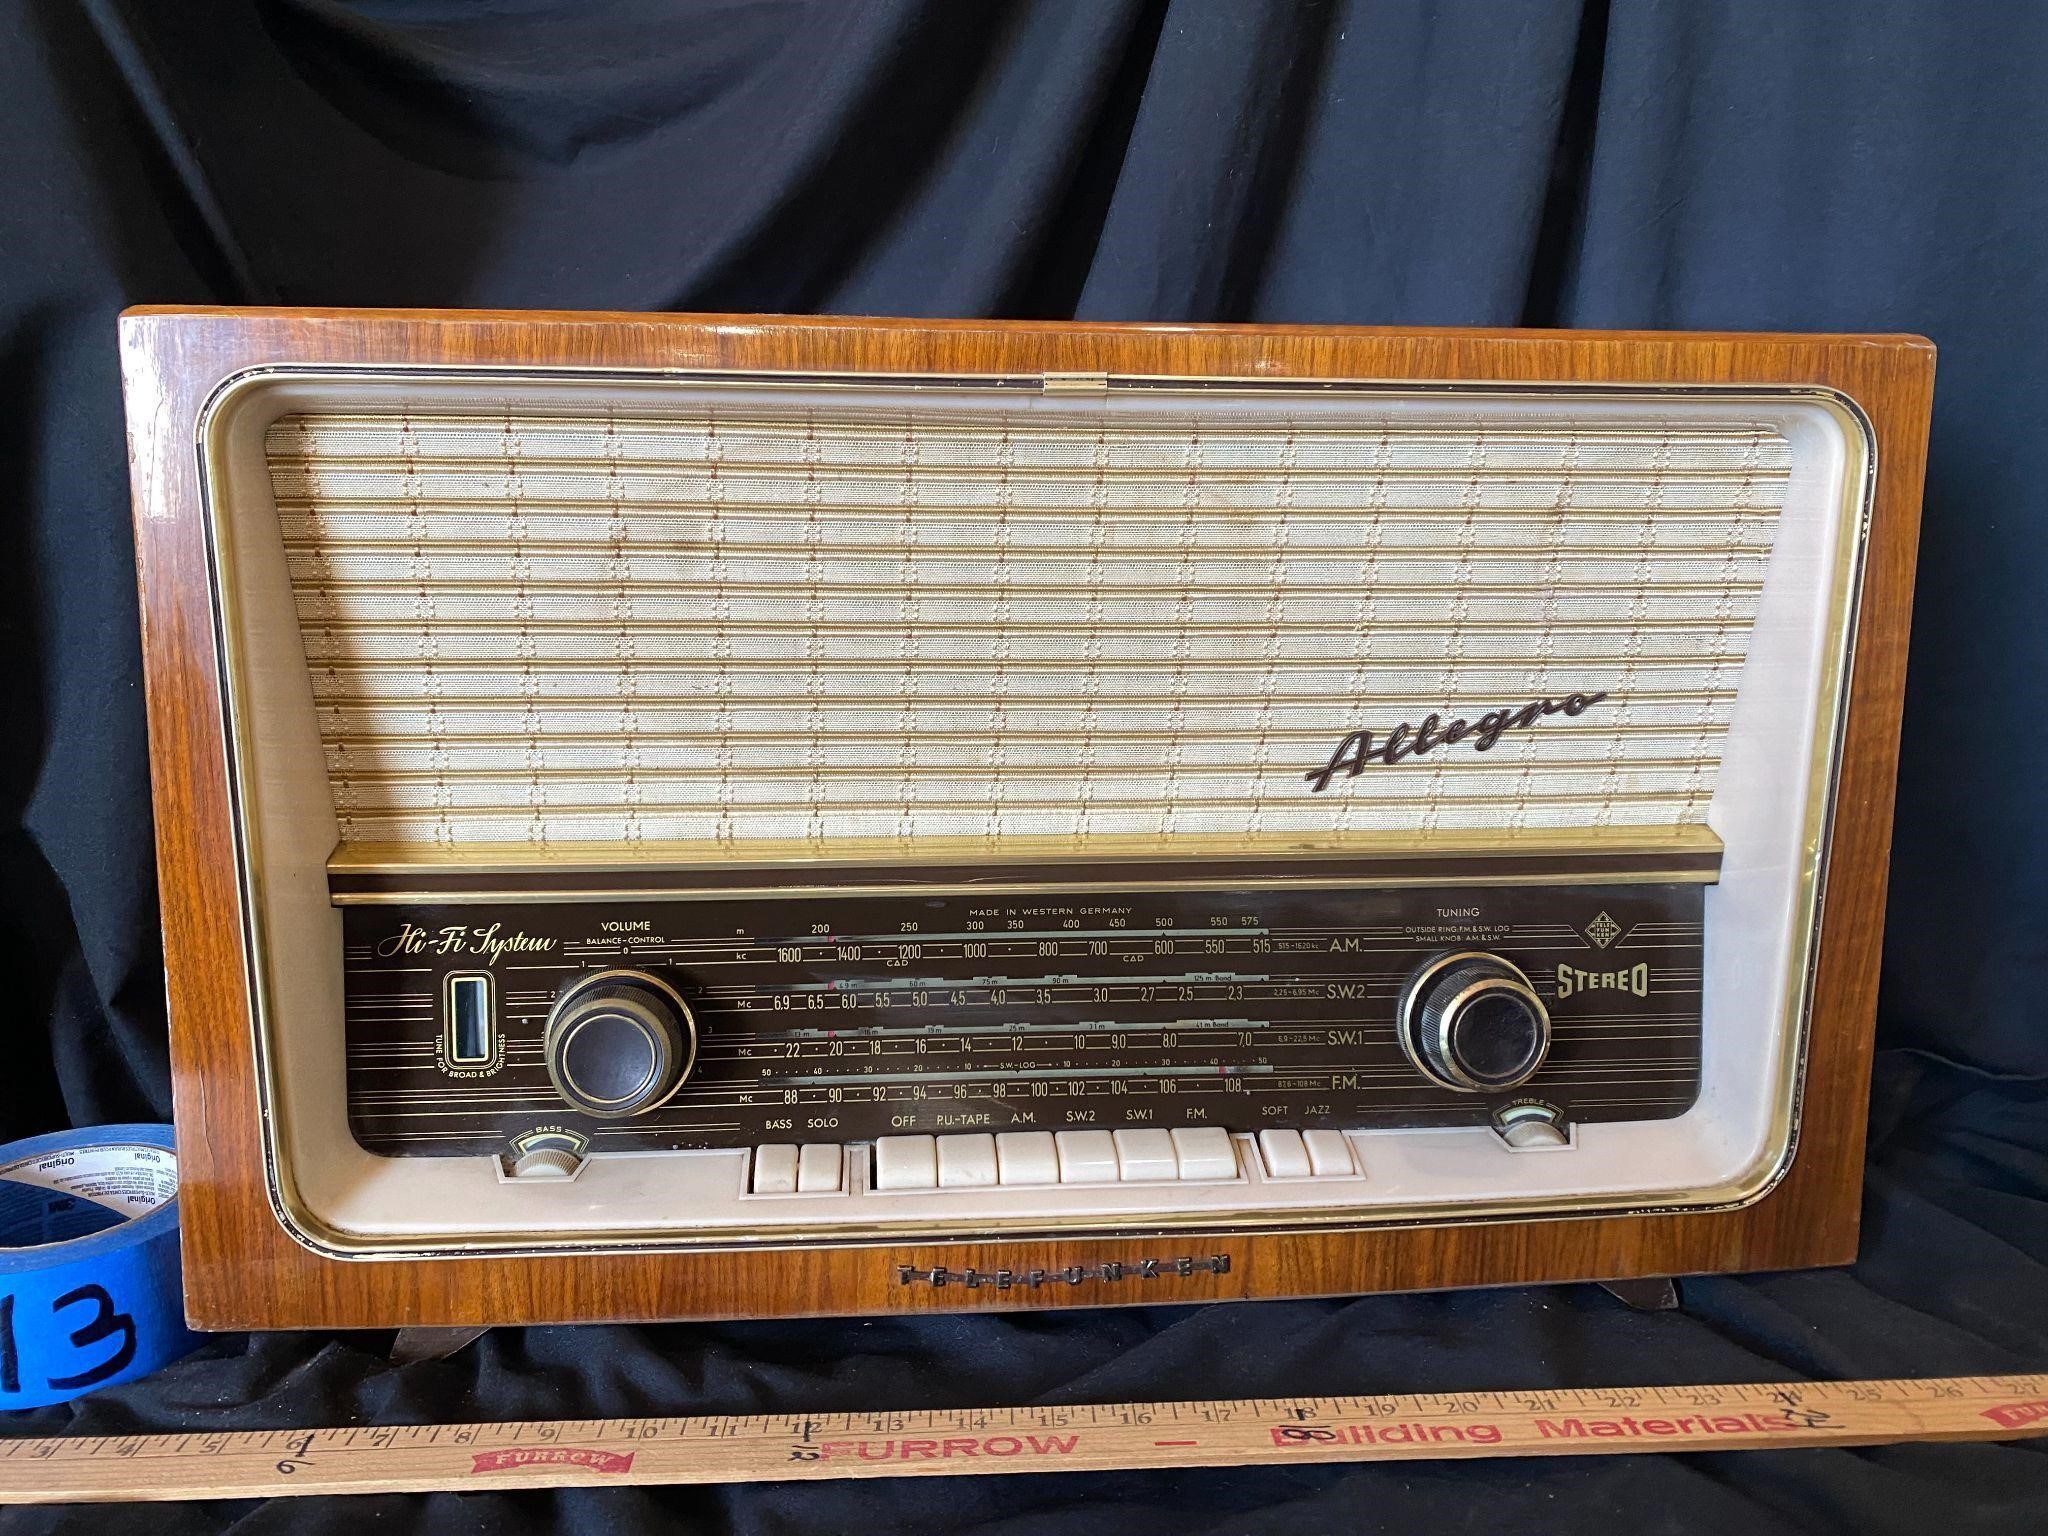 Vintage Telefunken Allegro Stereo - Made in German